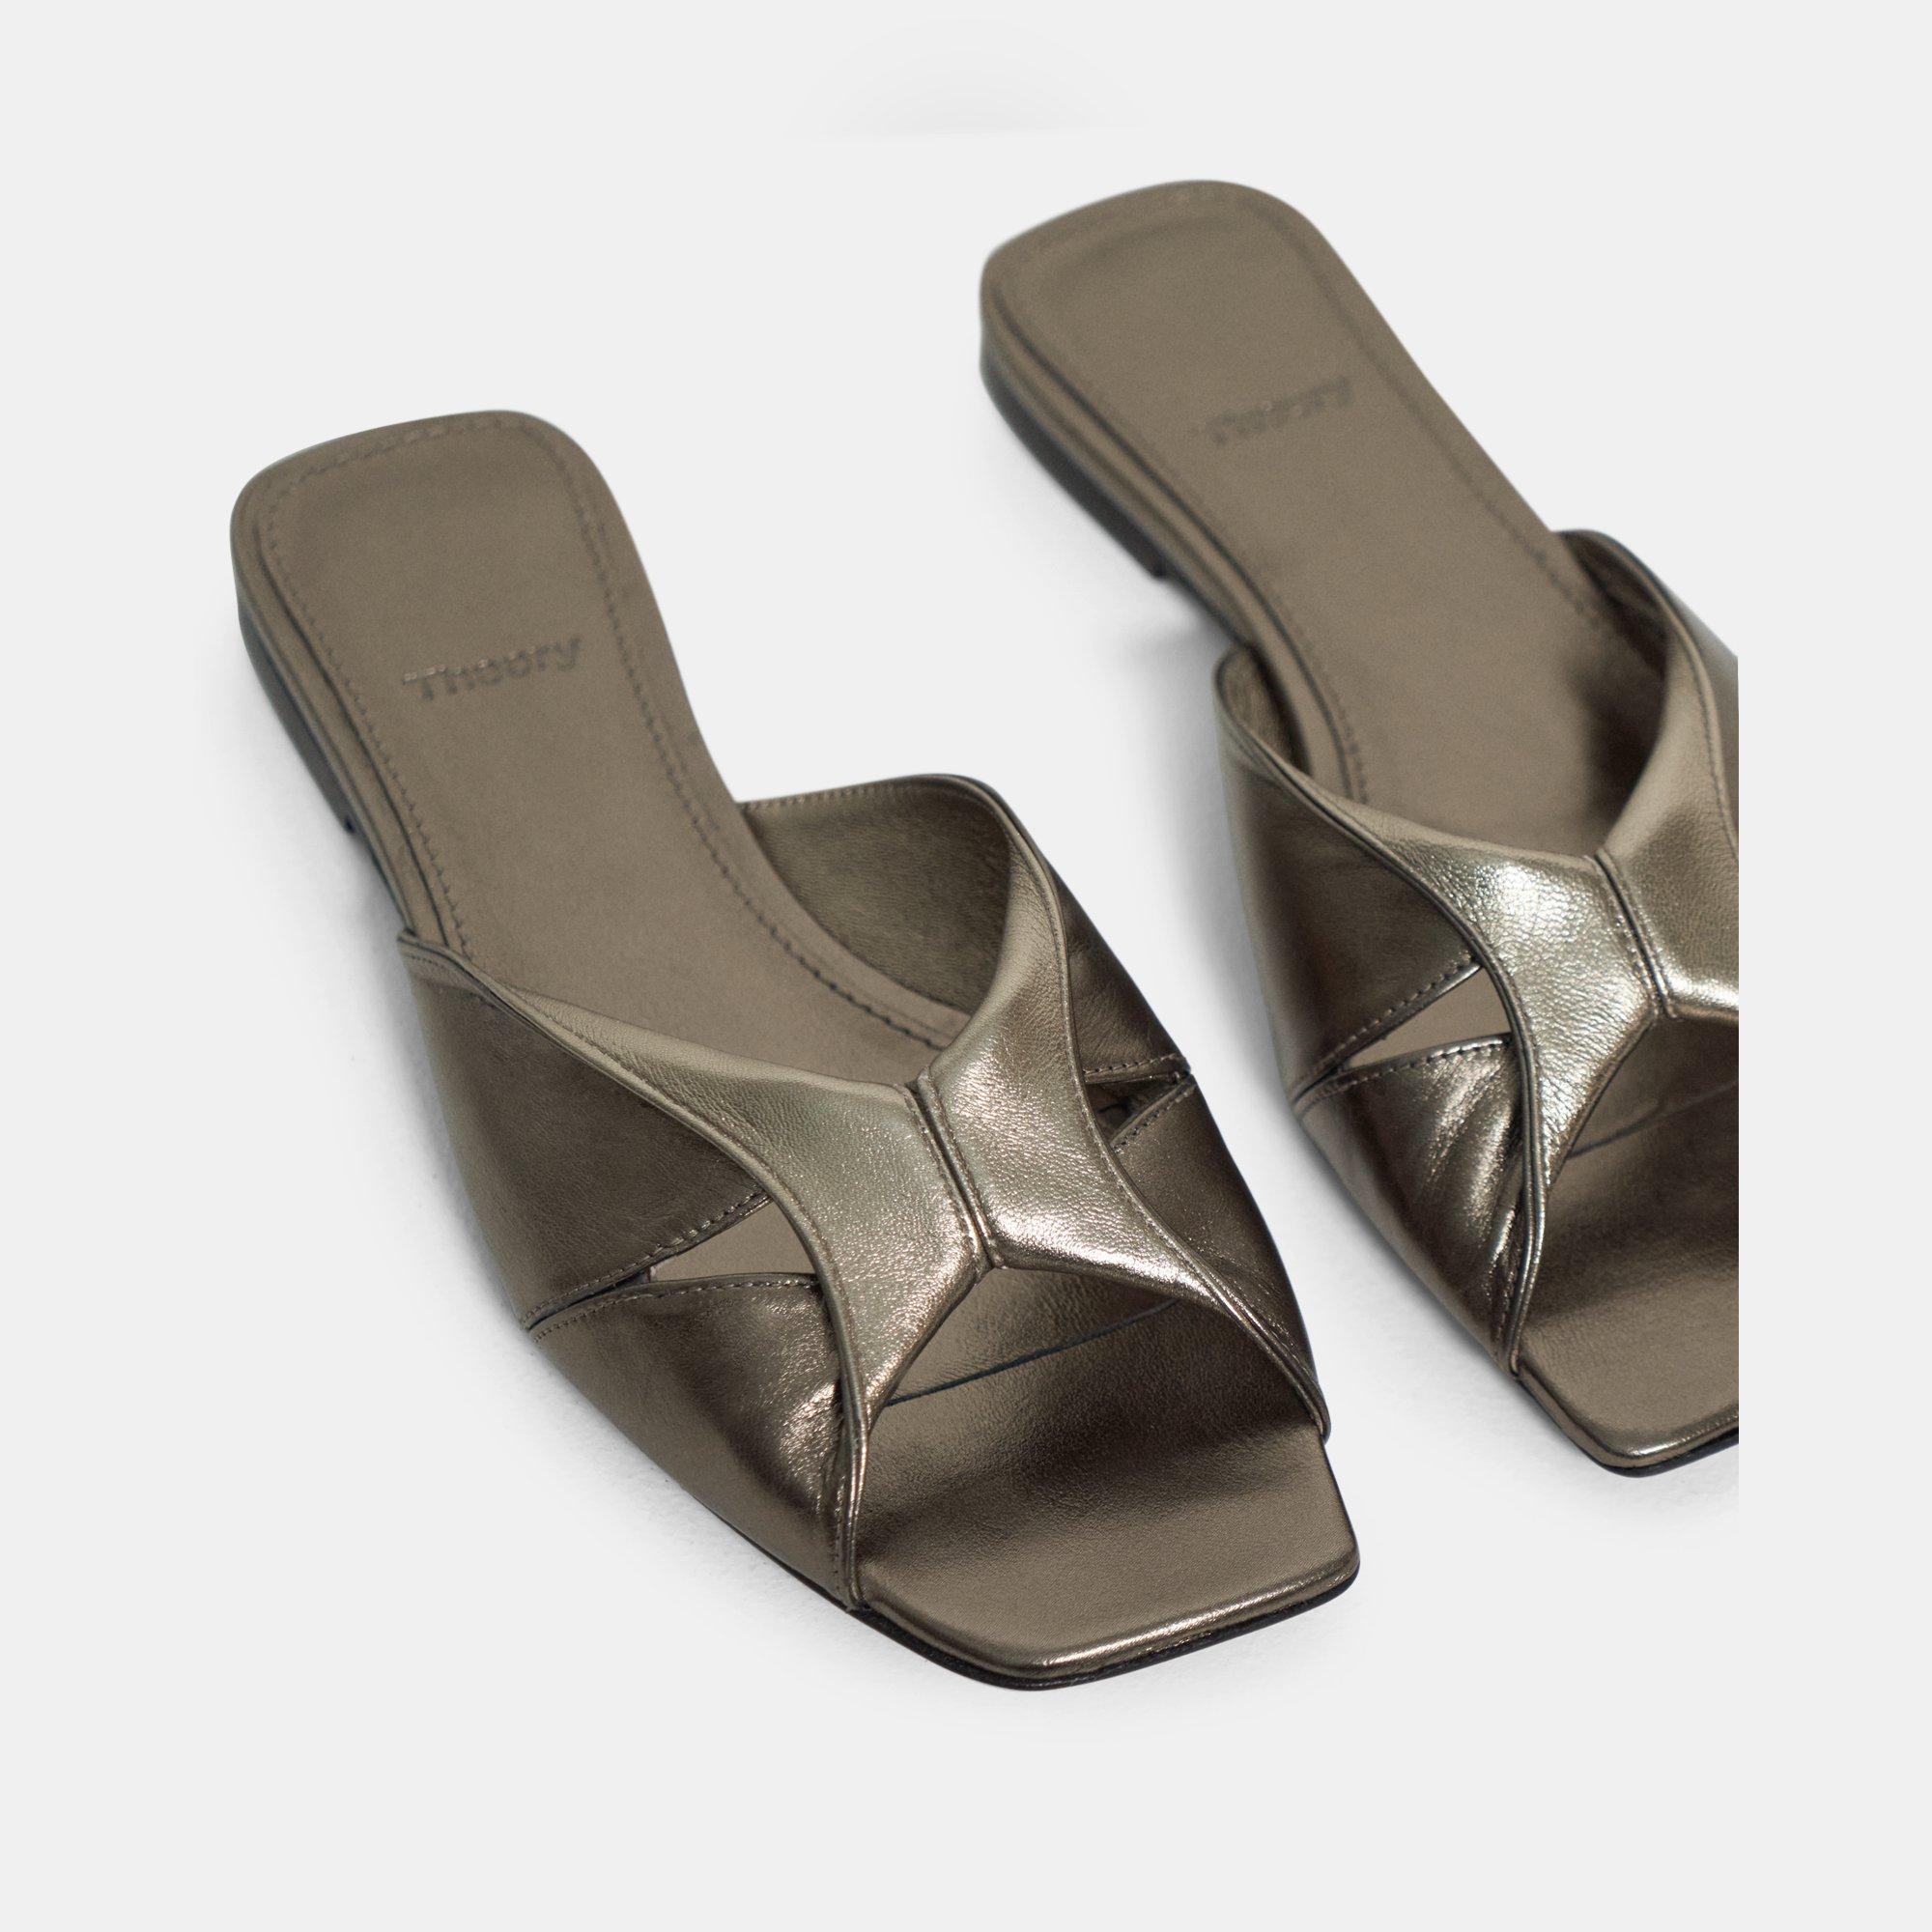 띠어리 Theory Twisted Slide Sandal in Metallic Leather,METALLIC BRONZE